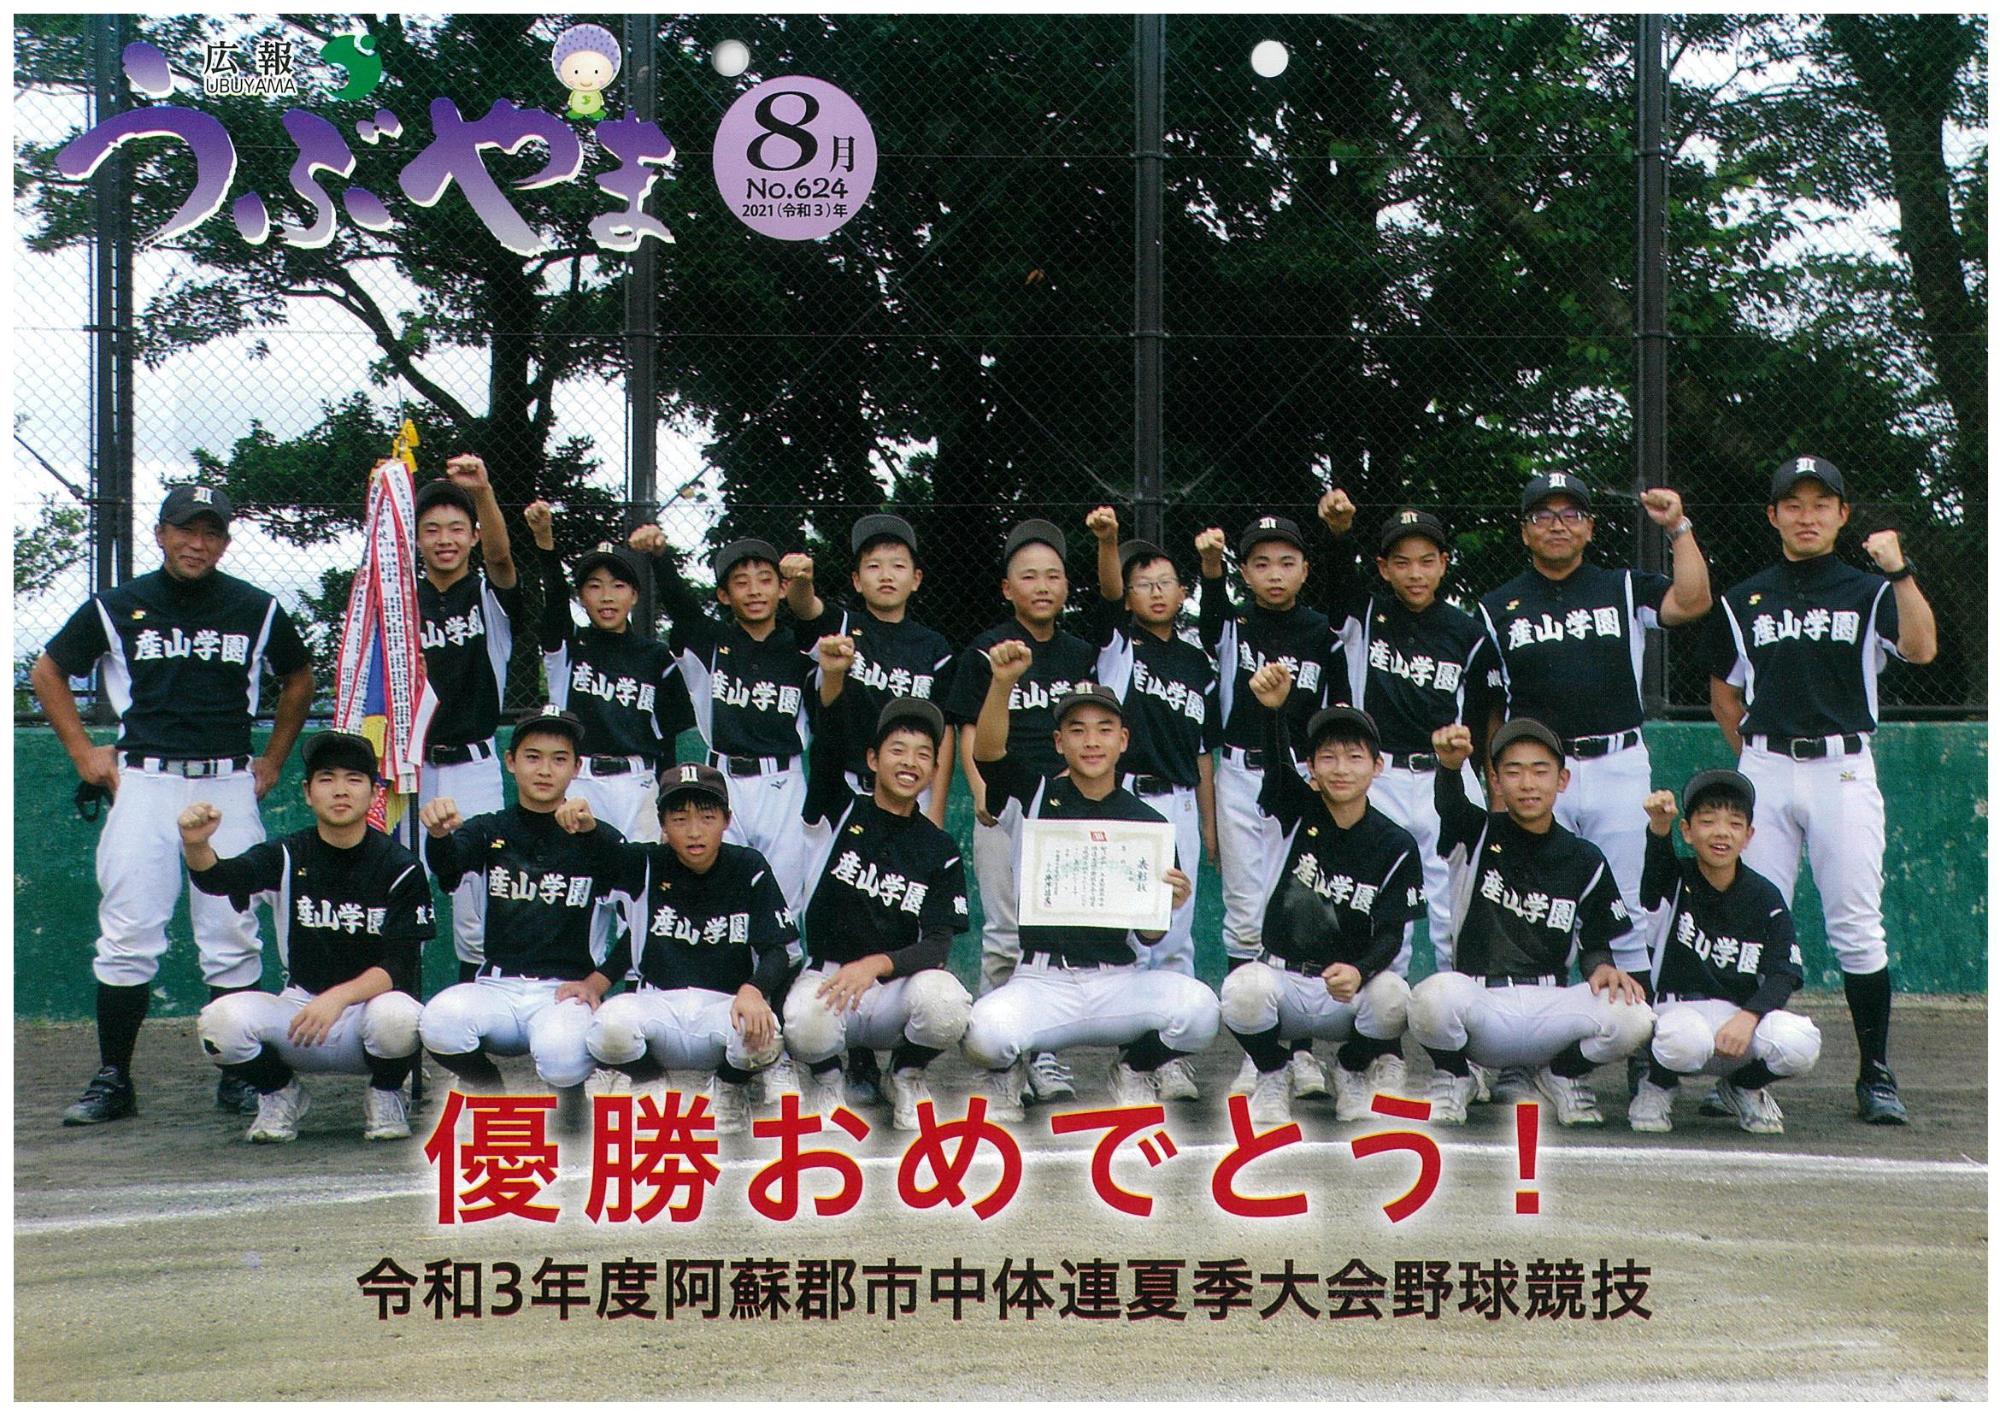 広報うぶやま2021年8月号の表紙の画像